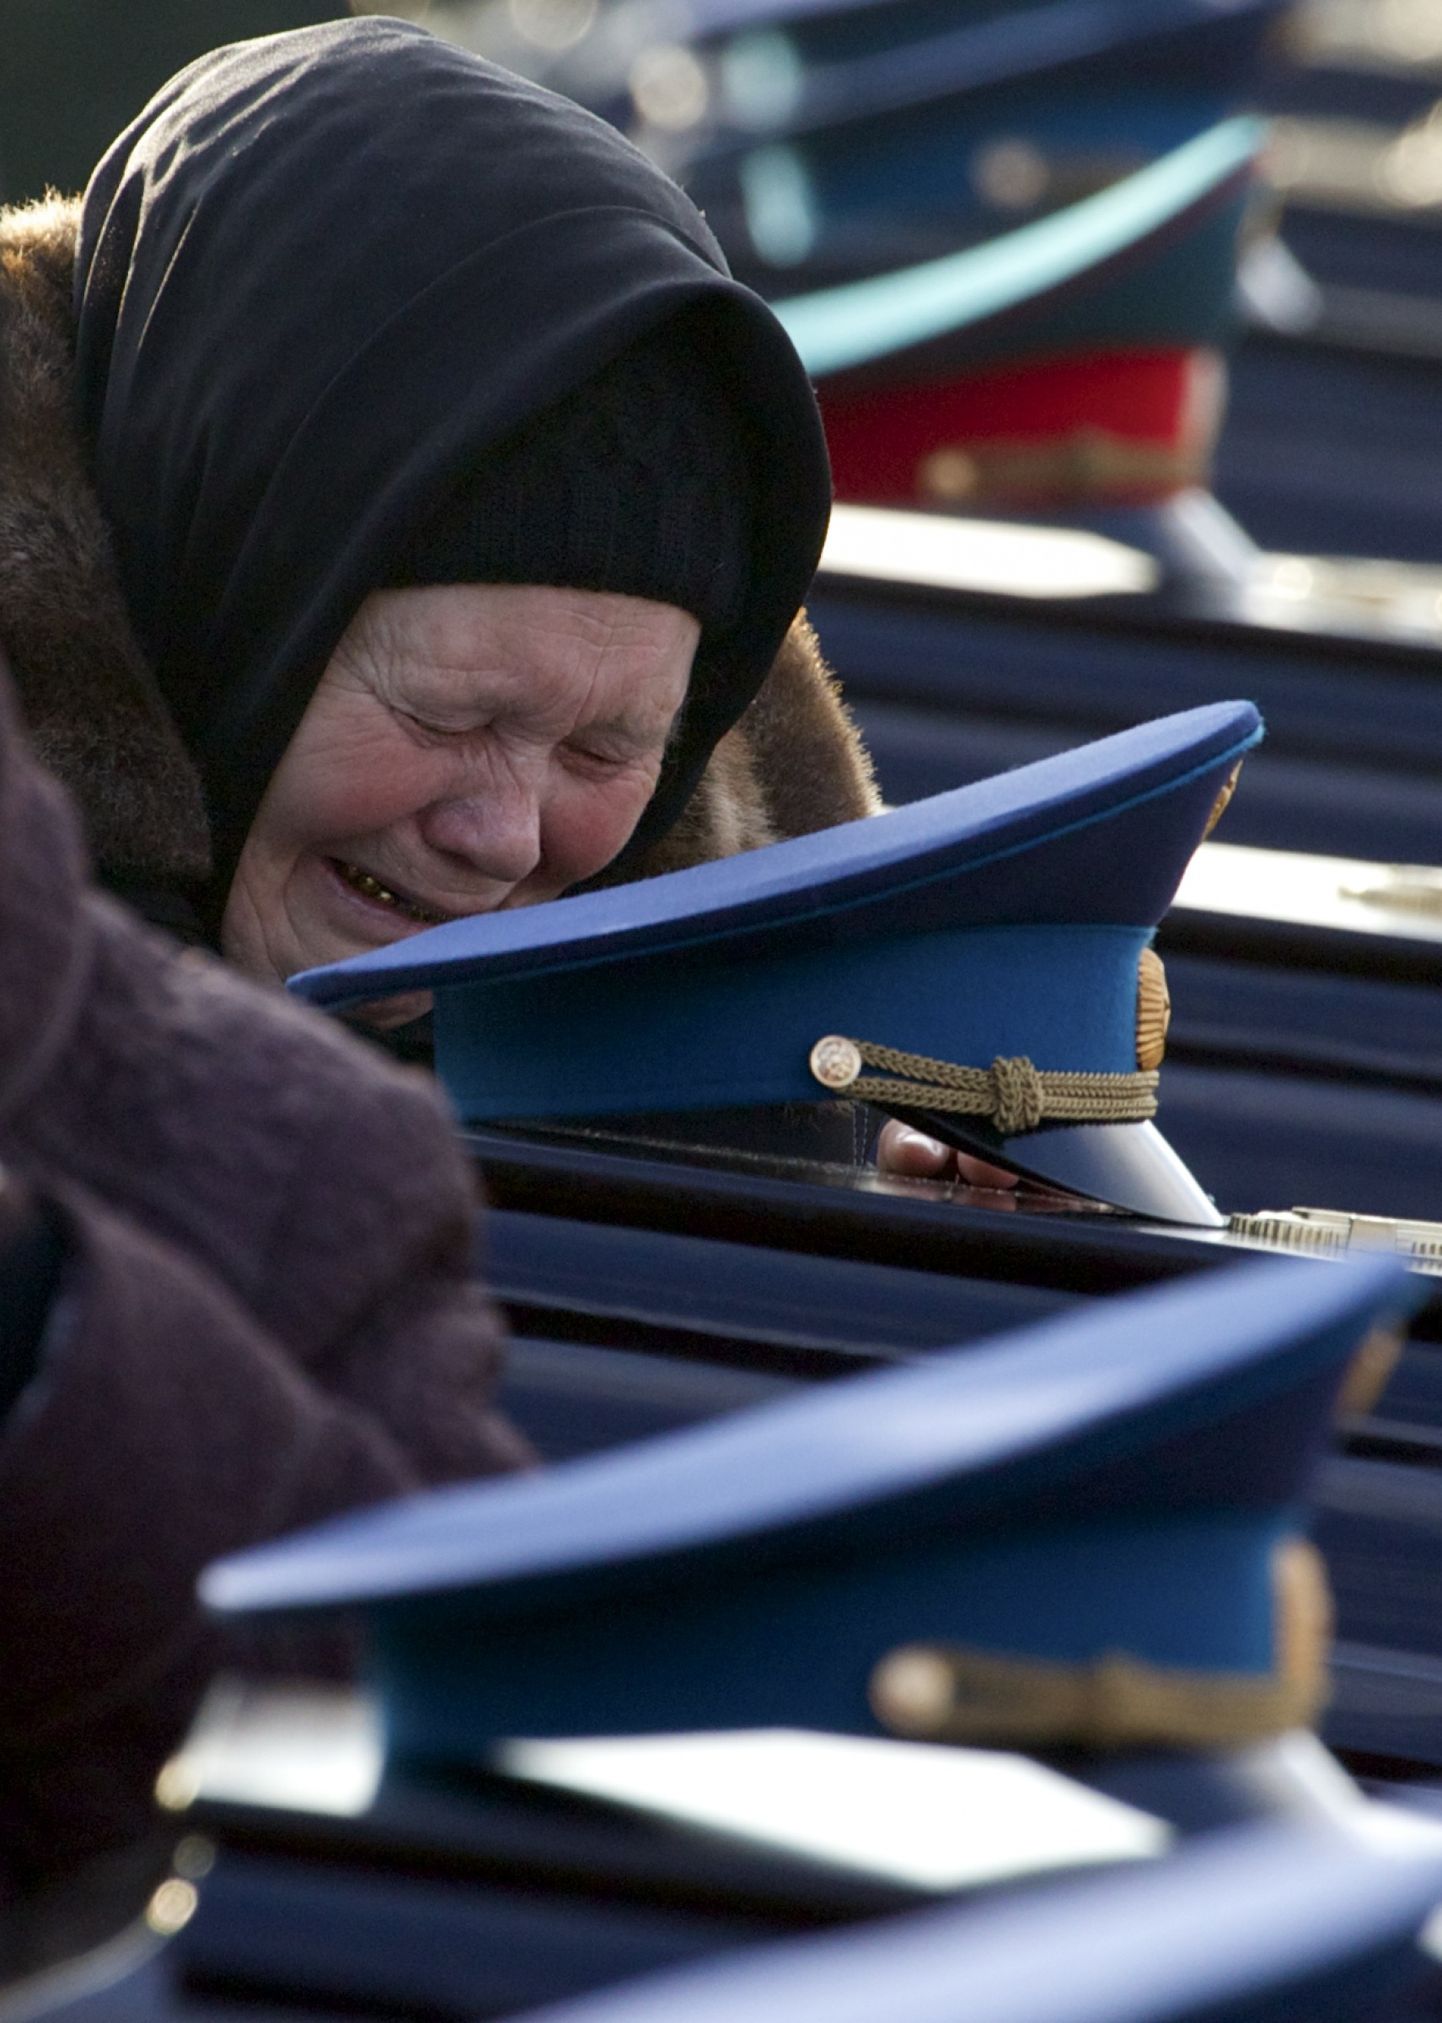 Lennuõnnetuses poja koatanud ema jaanuaris Moskvas toimunud matustetseremoonial.